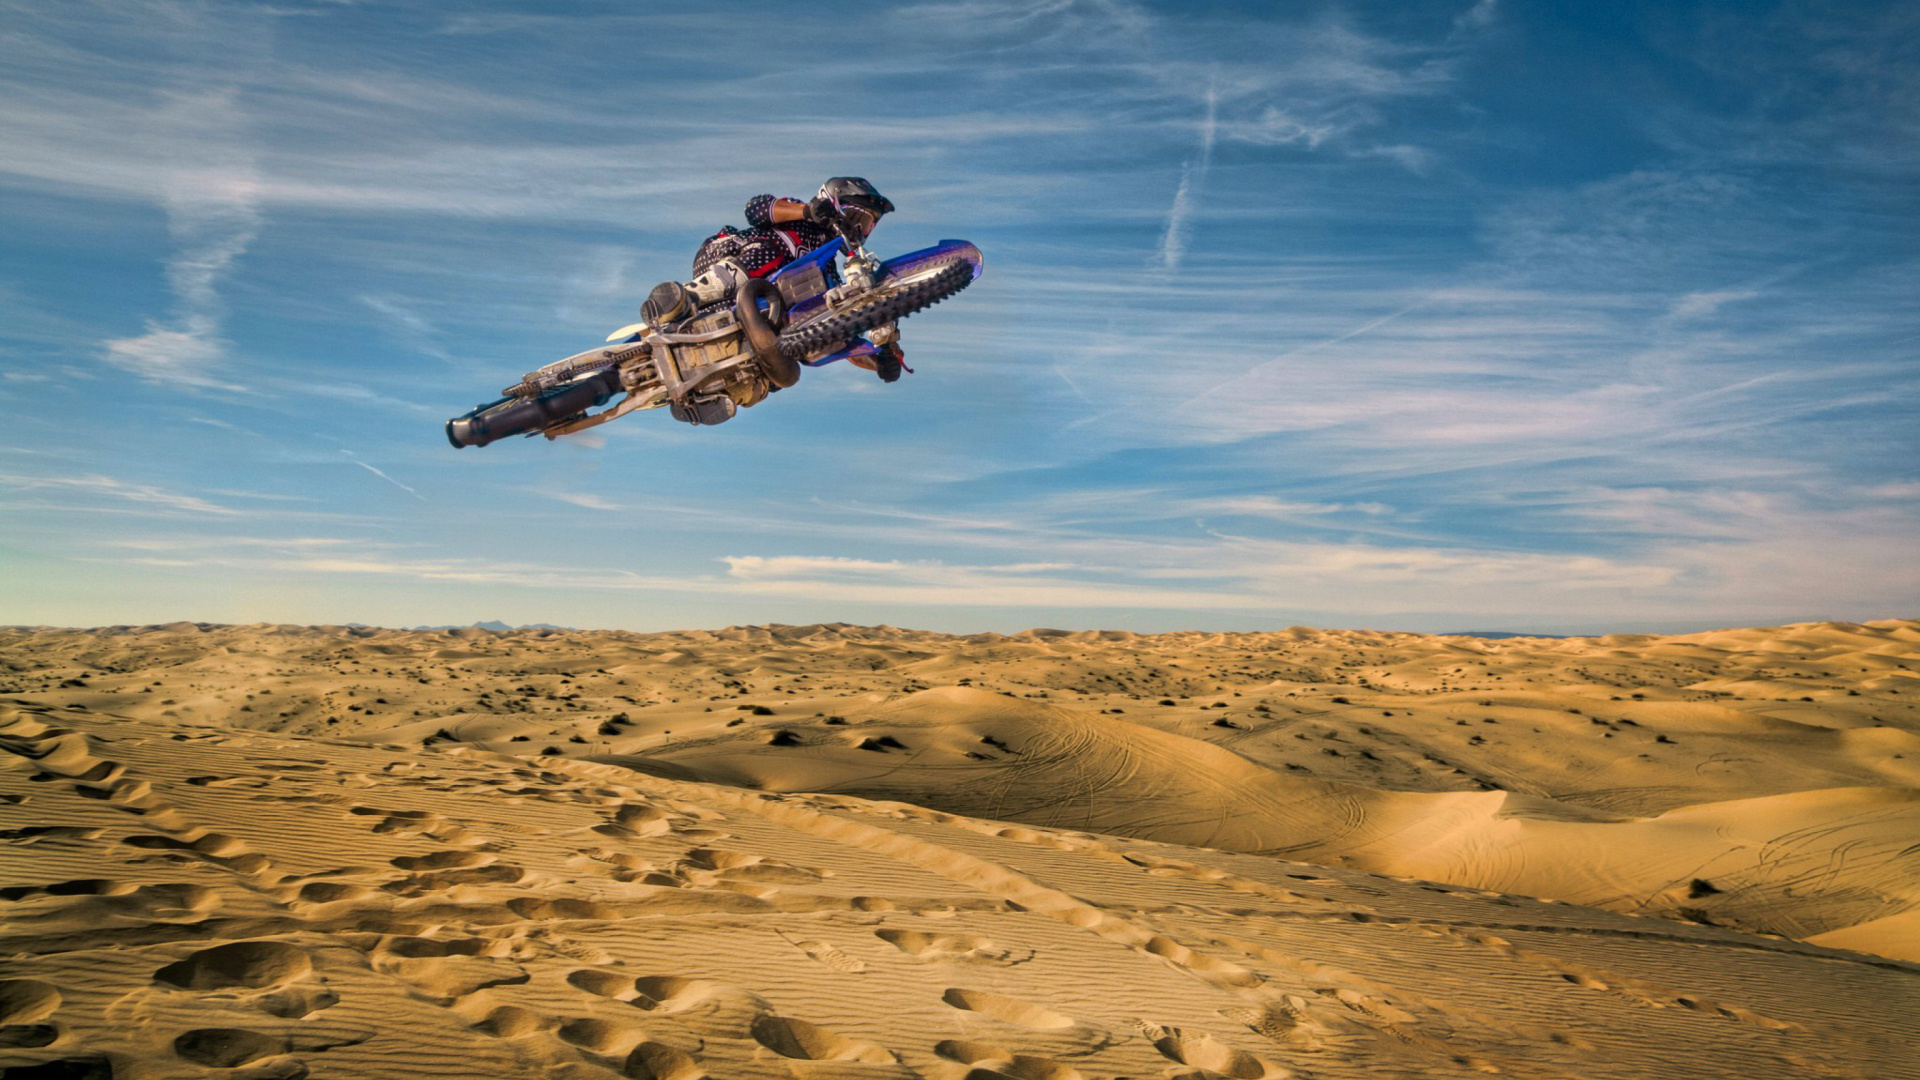 Motocross in Desert wallpaper 1920x1080